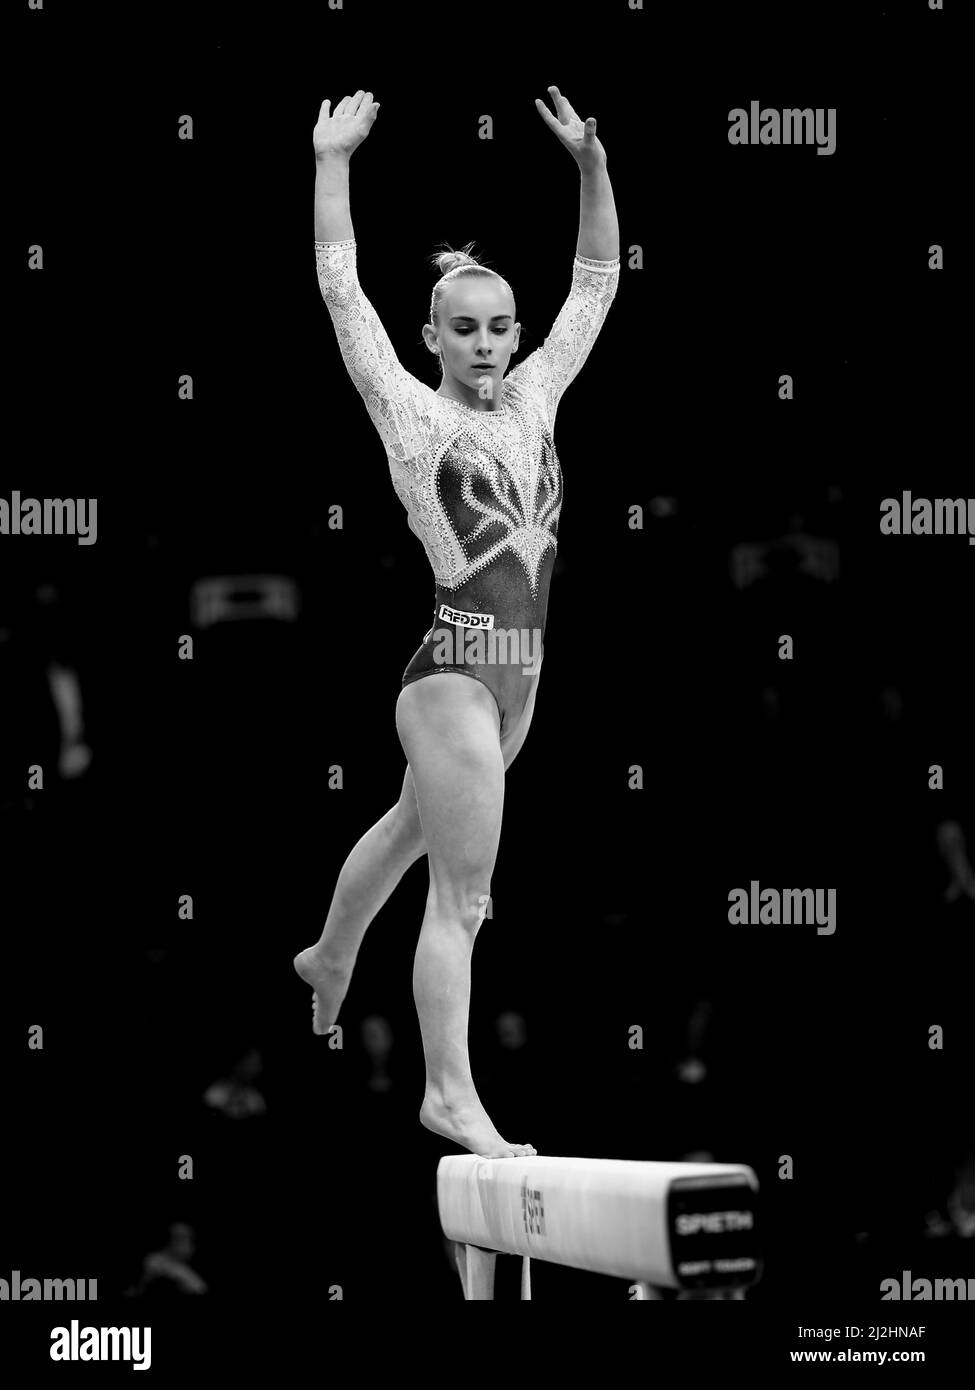 Szczecin, Polonia, 11 aprile 2019: Alice D'Amato d'Italia compete sul balance beam durante i campionati di ginnastica artistica Foto Stock